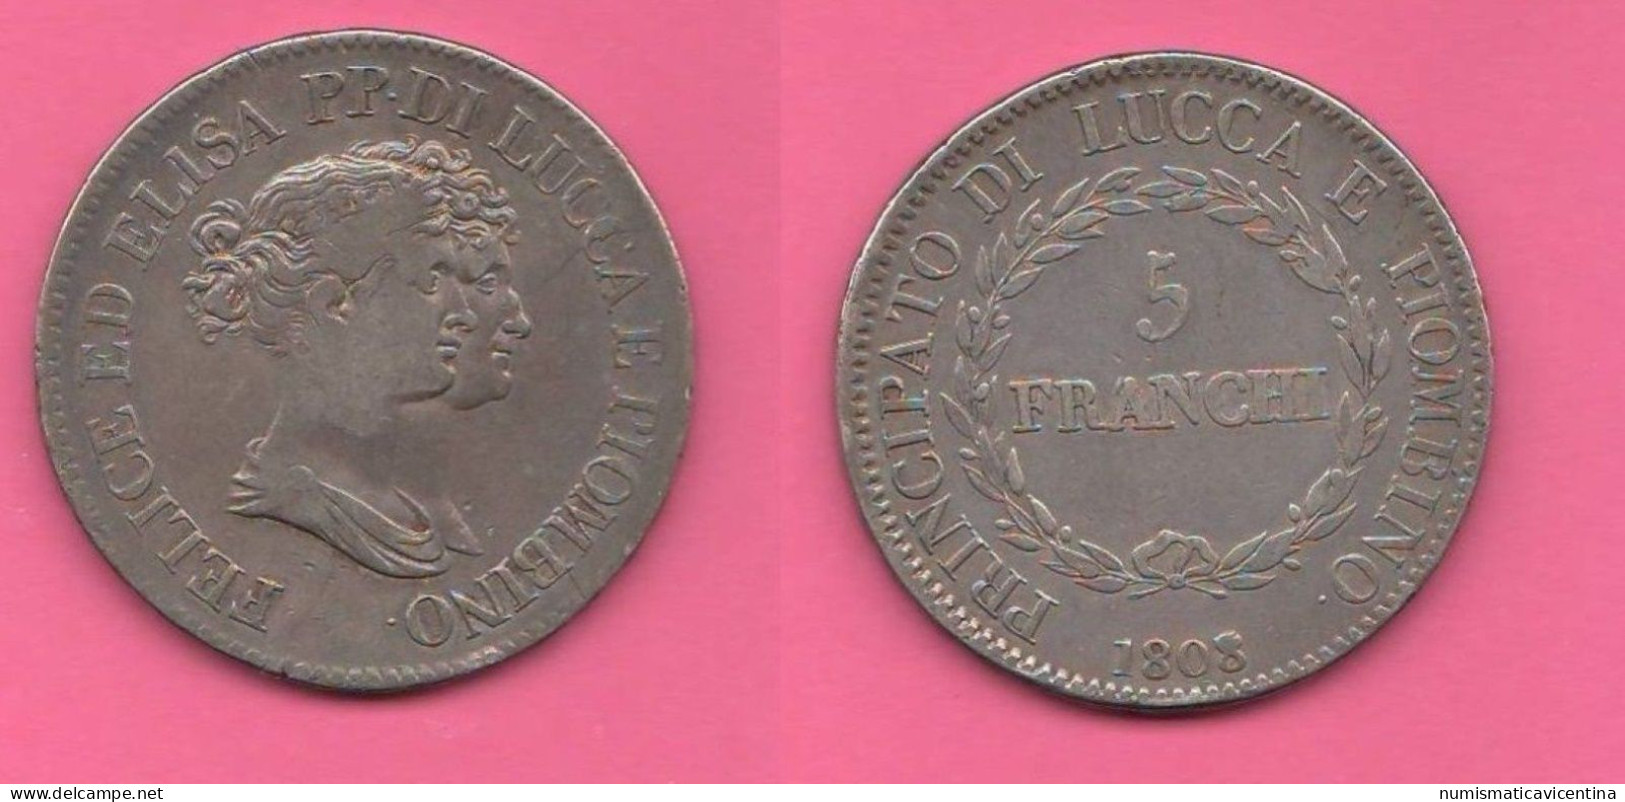 Toscana 5 Franchi 1808 Lucca E Piombino Tuscany Principate 5 Francs 1808 Silver Coin - Lucca